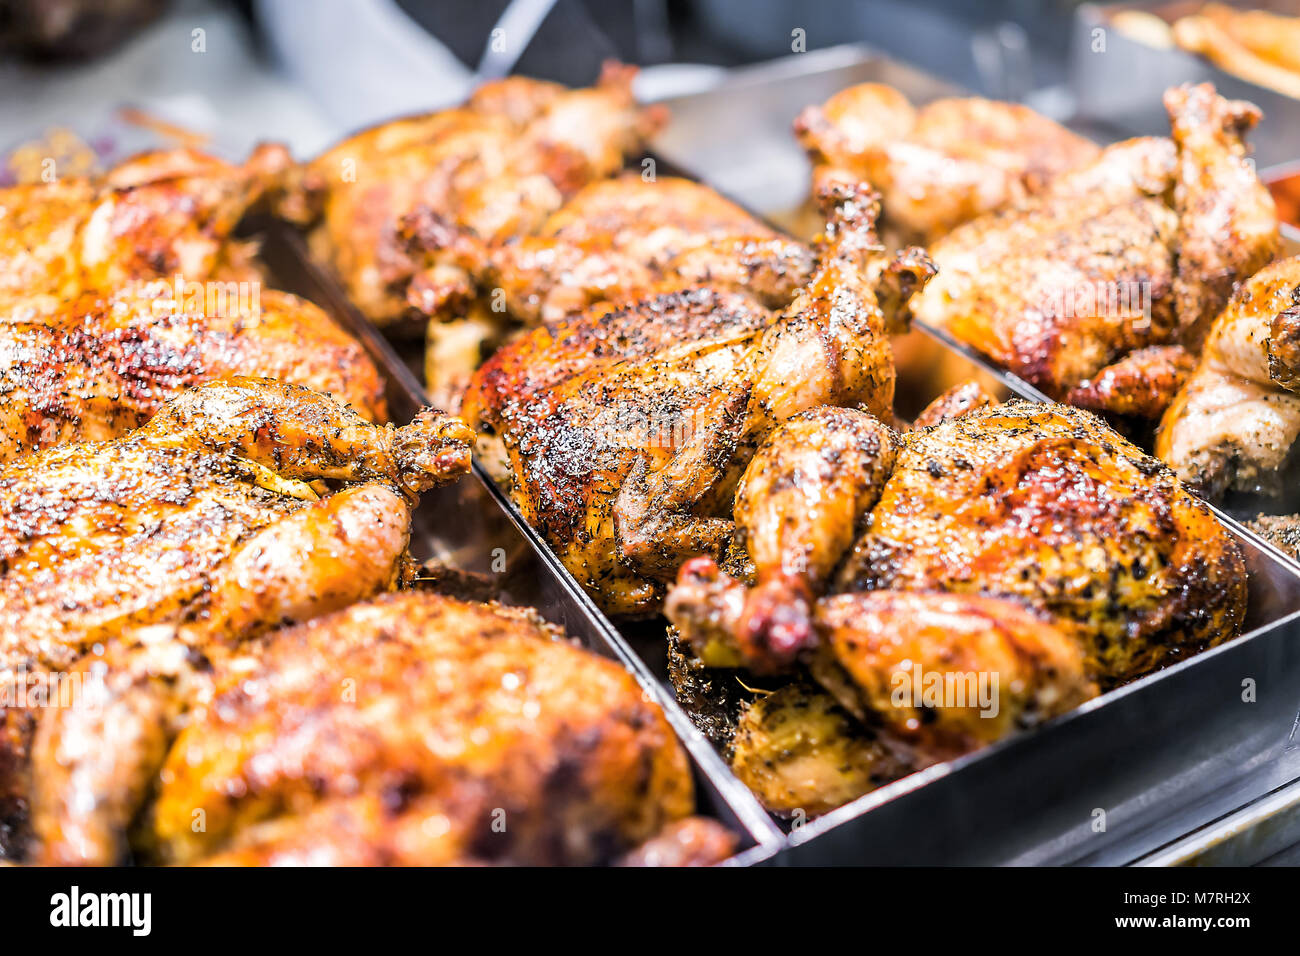 Viele ganzes Huhn geröstete Closeup auf Tablett im Deli display Store shop Lebensmittelgeschäft braun mit Kräutern, goldenen Haut, Gewürze, knusprige Stockfoto